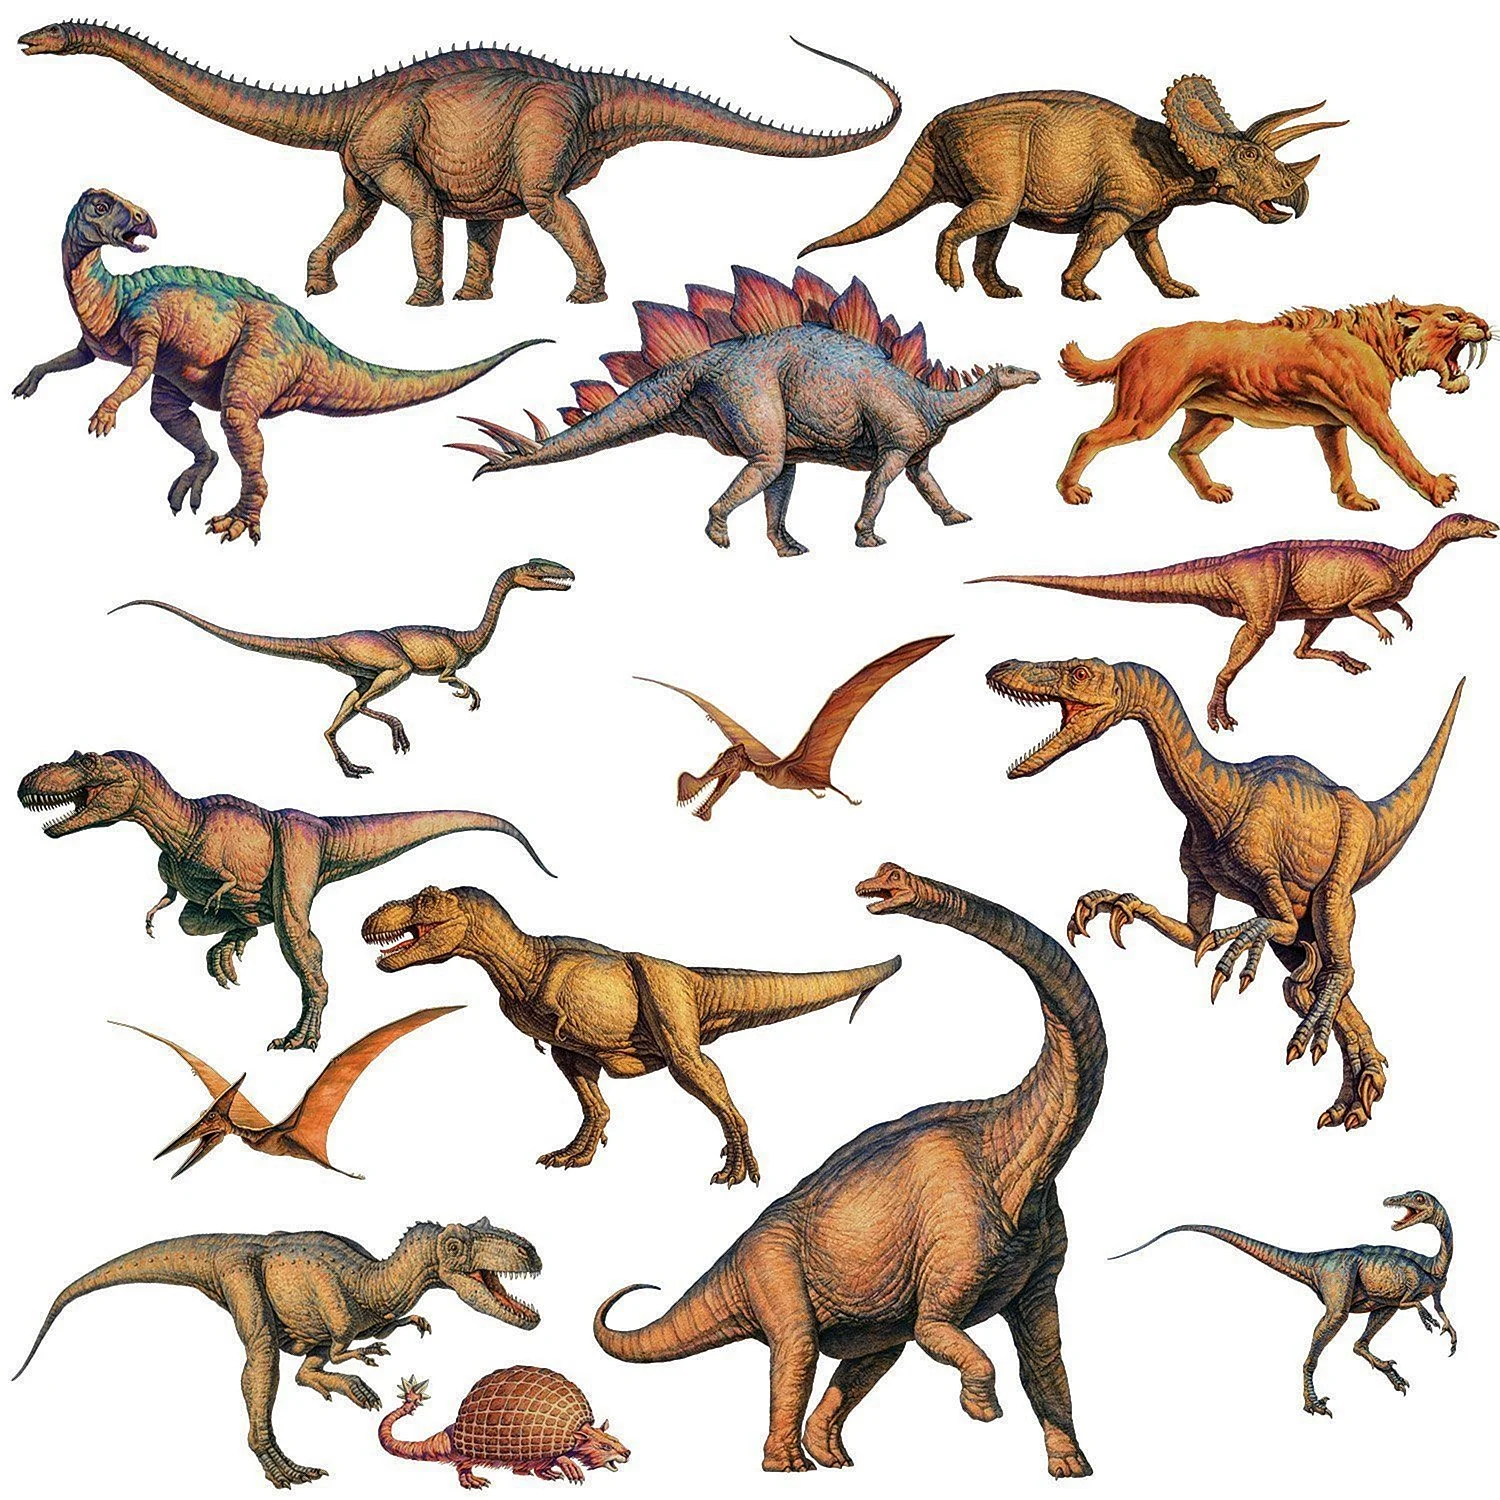 Динозавры (с наклейками)